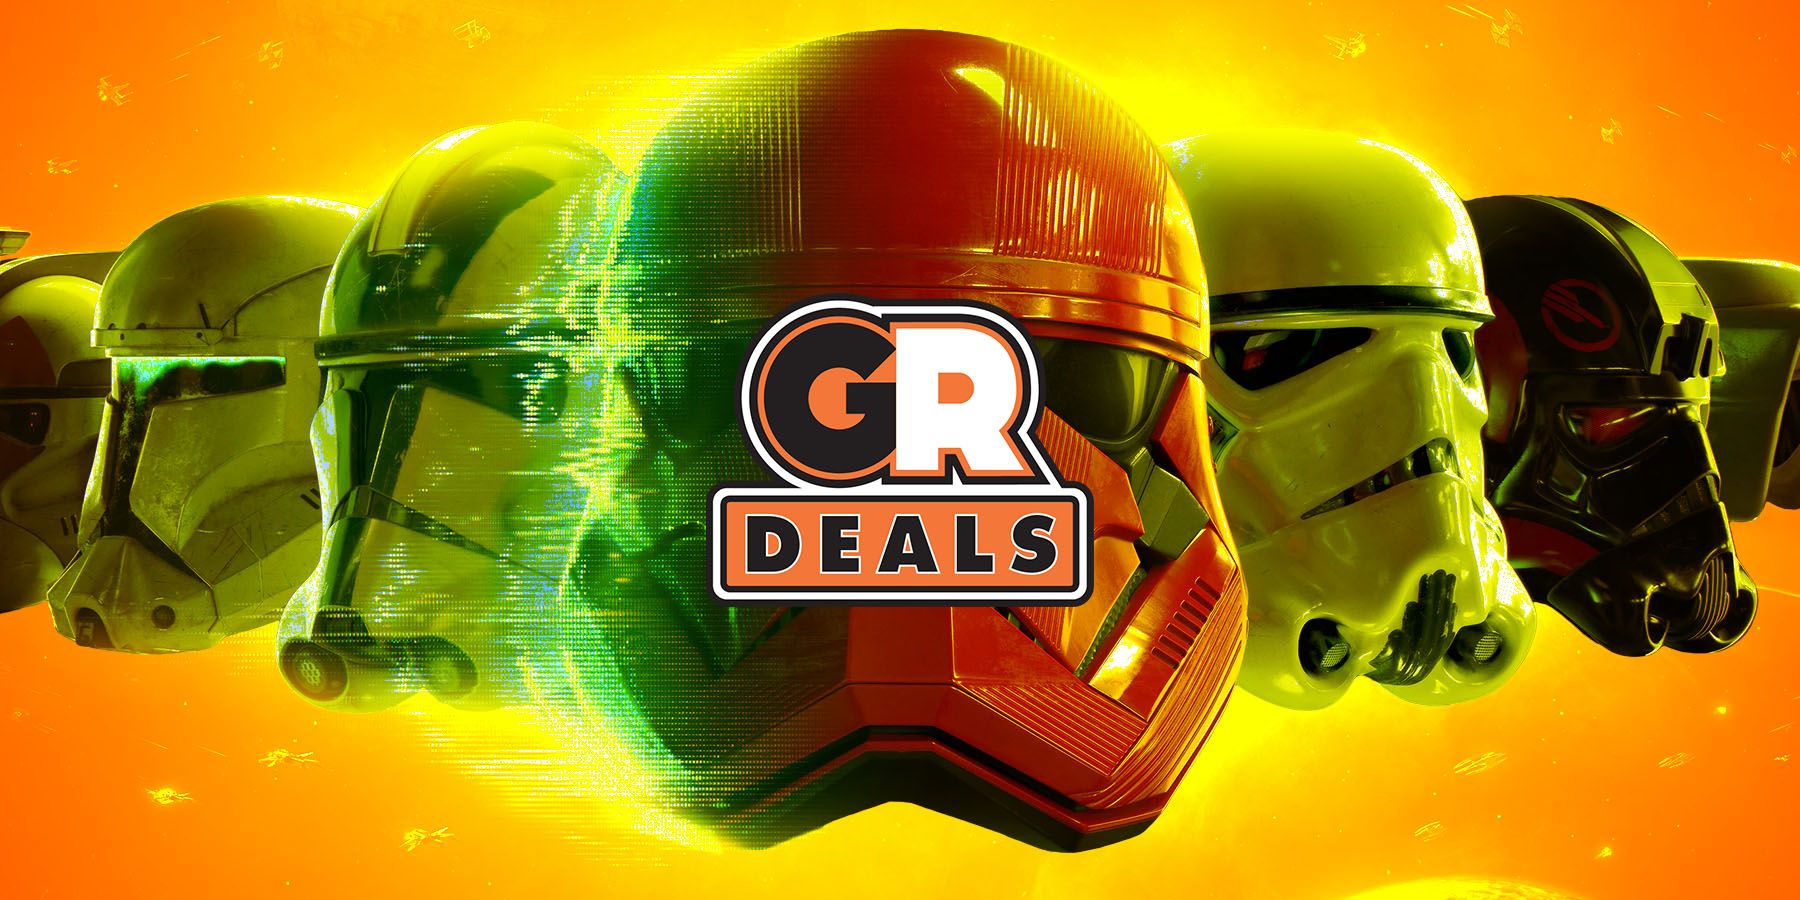 Star Wars Battlefront II: Celebration Edition gets deal on Humble Bundle